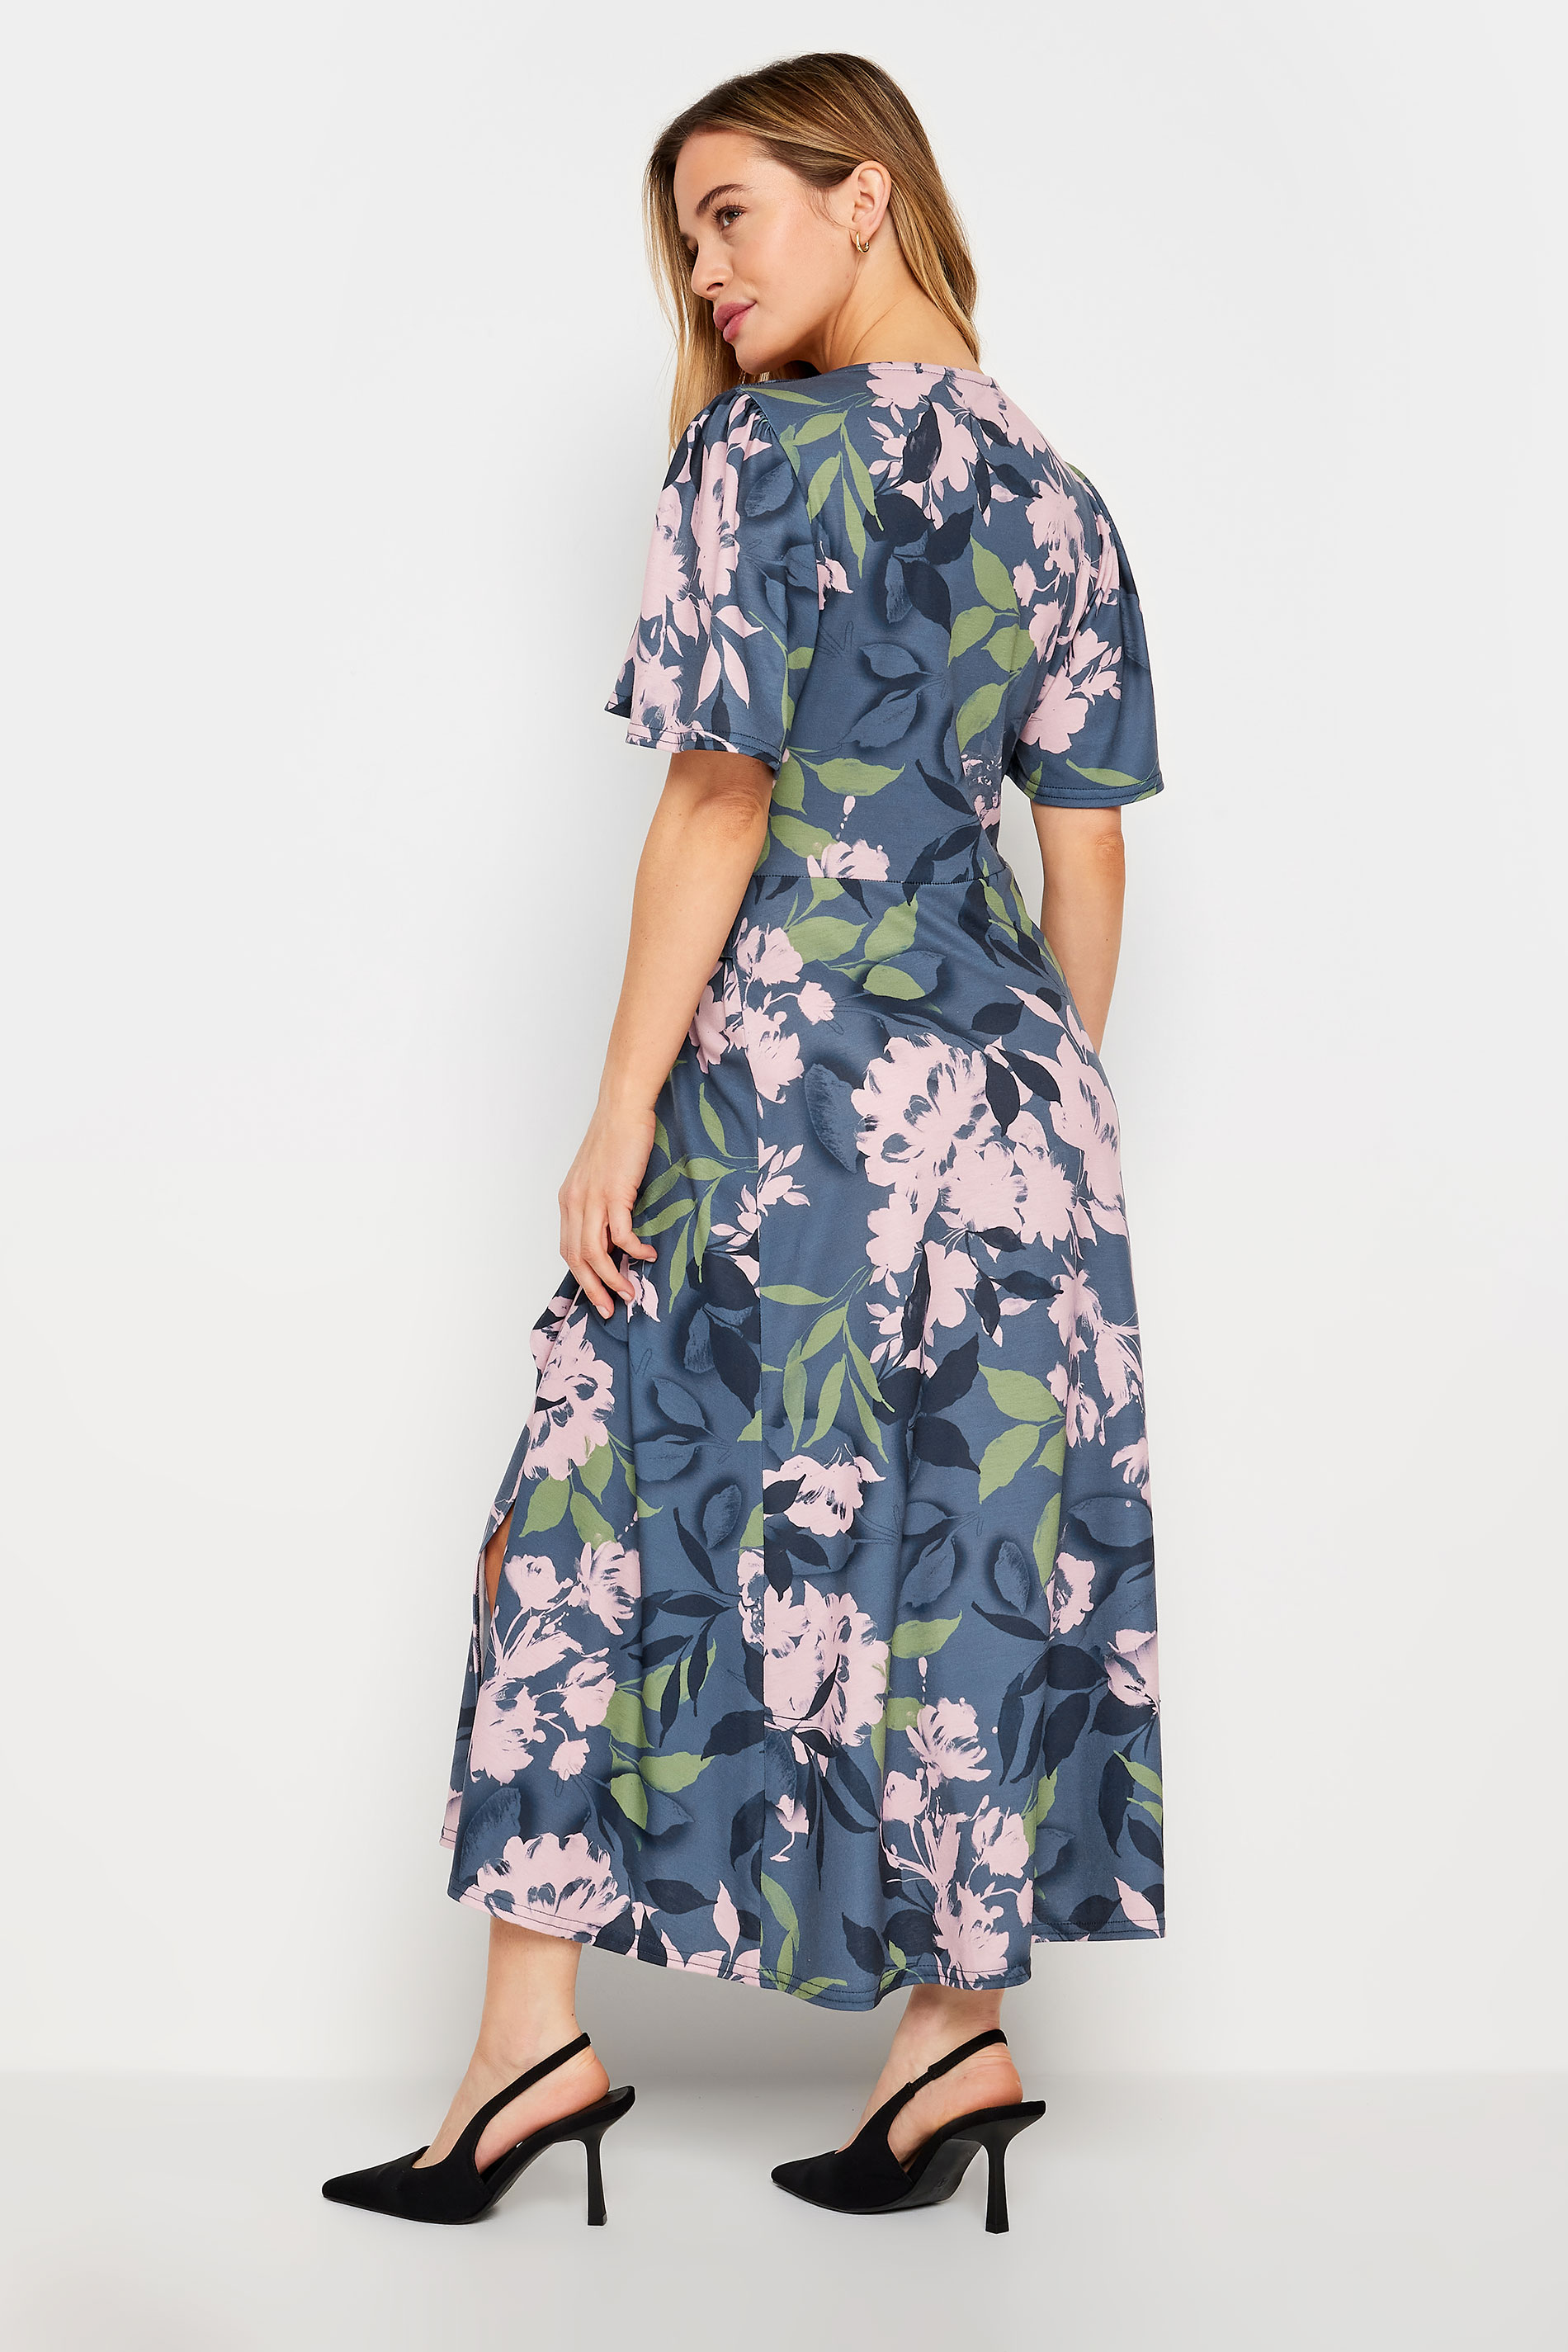 M&Co Petite Blue Floral Belted Wrap Dress | M&Co 3